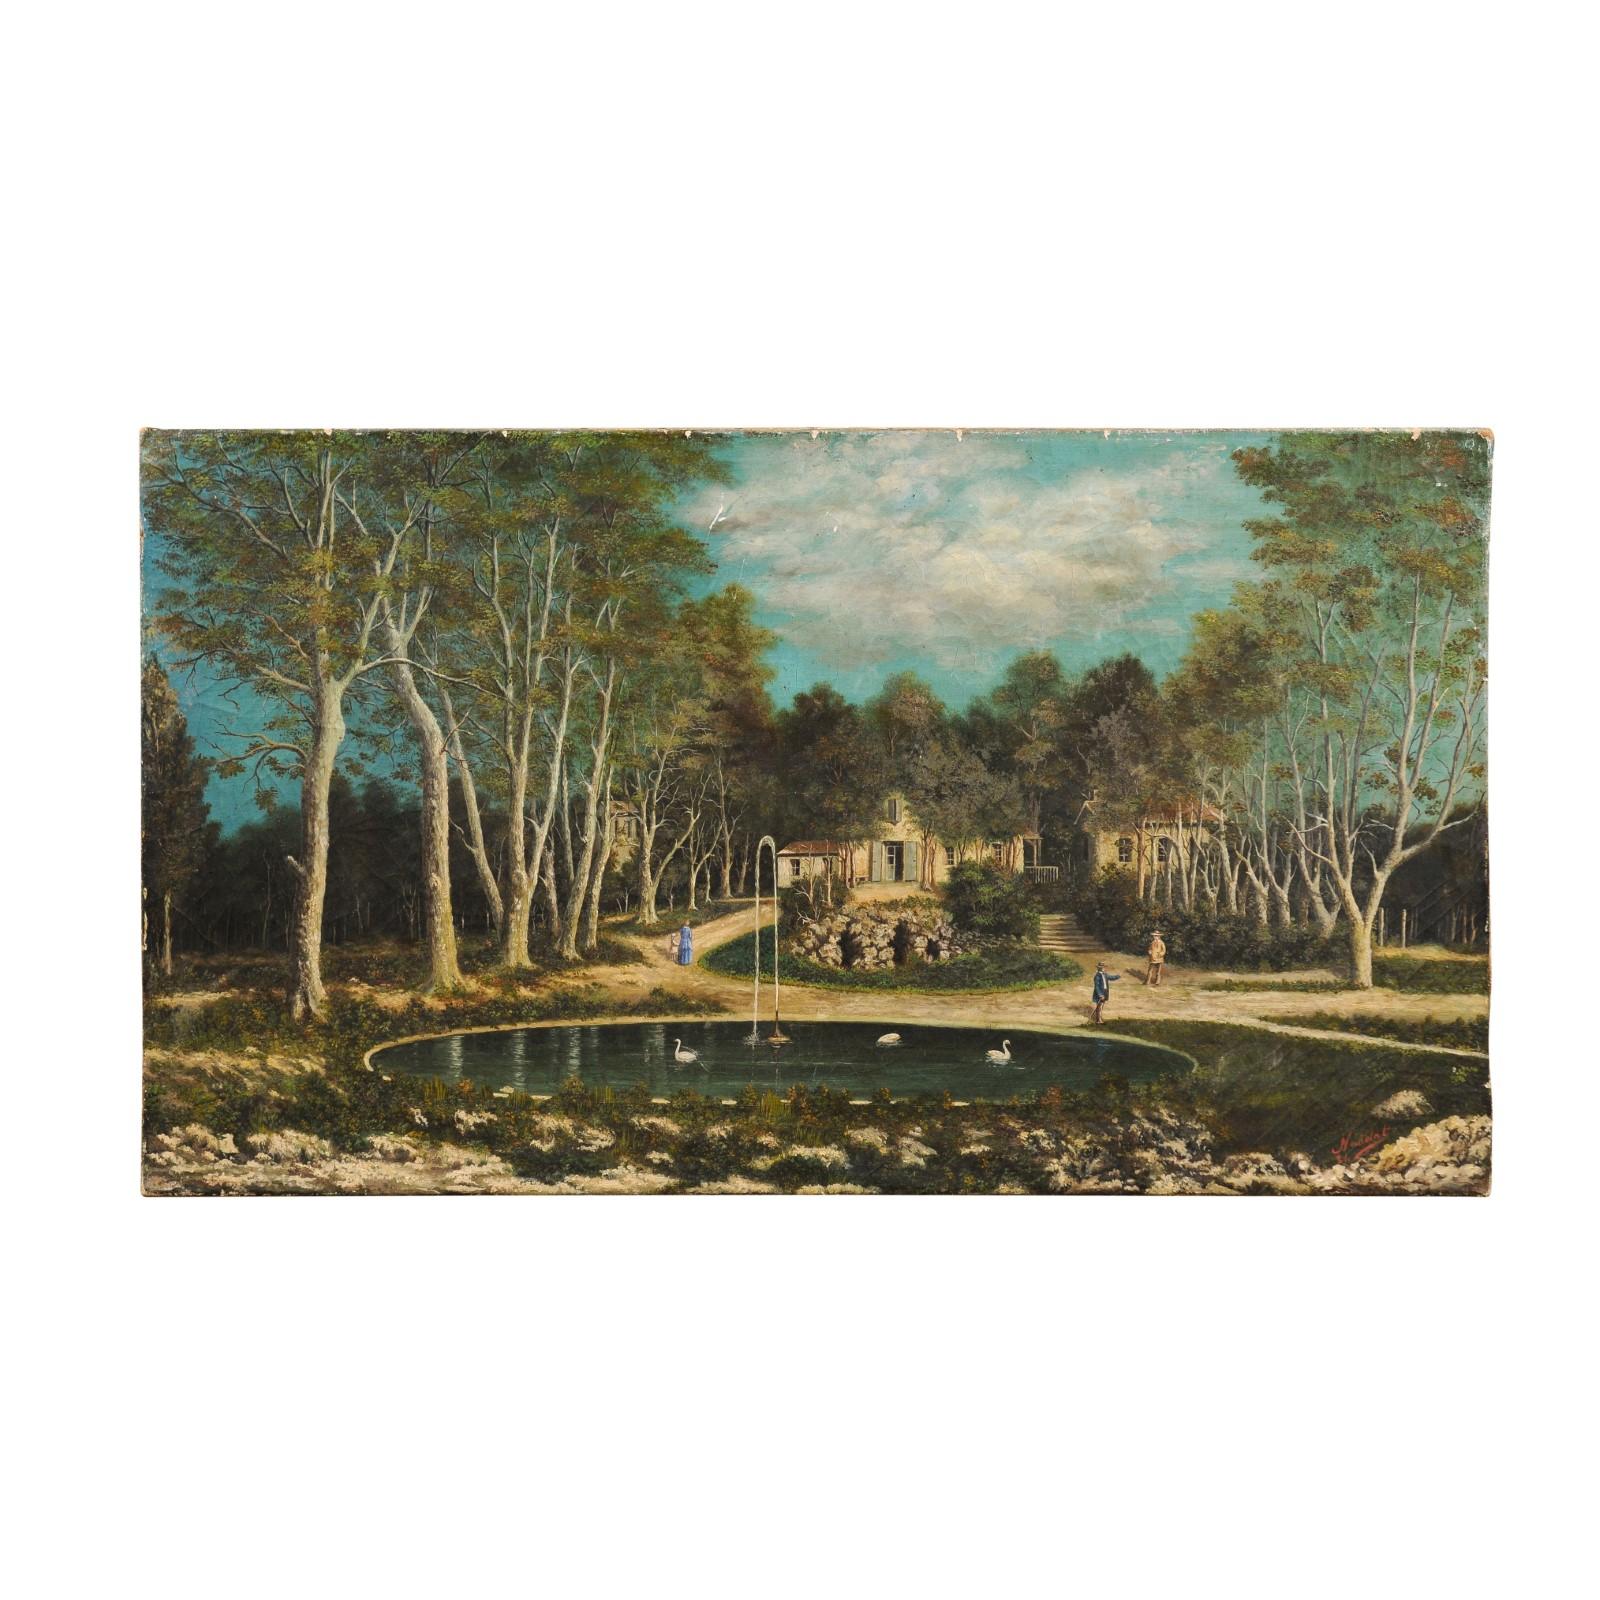 Ein französisches Landschaftsgemälde in Öl auf Leinwand aus dem 19. Jahrhundert, das einen eleganten Weiler mit einem Brunnen im Vordergrund zeigt. Das im 19. Jahrhundert in Frankreich geschaffene Gemälde zeigt eine heitere und friedliche Szene.